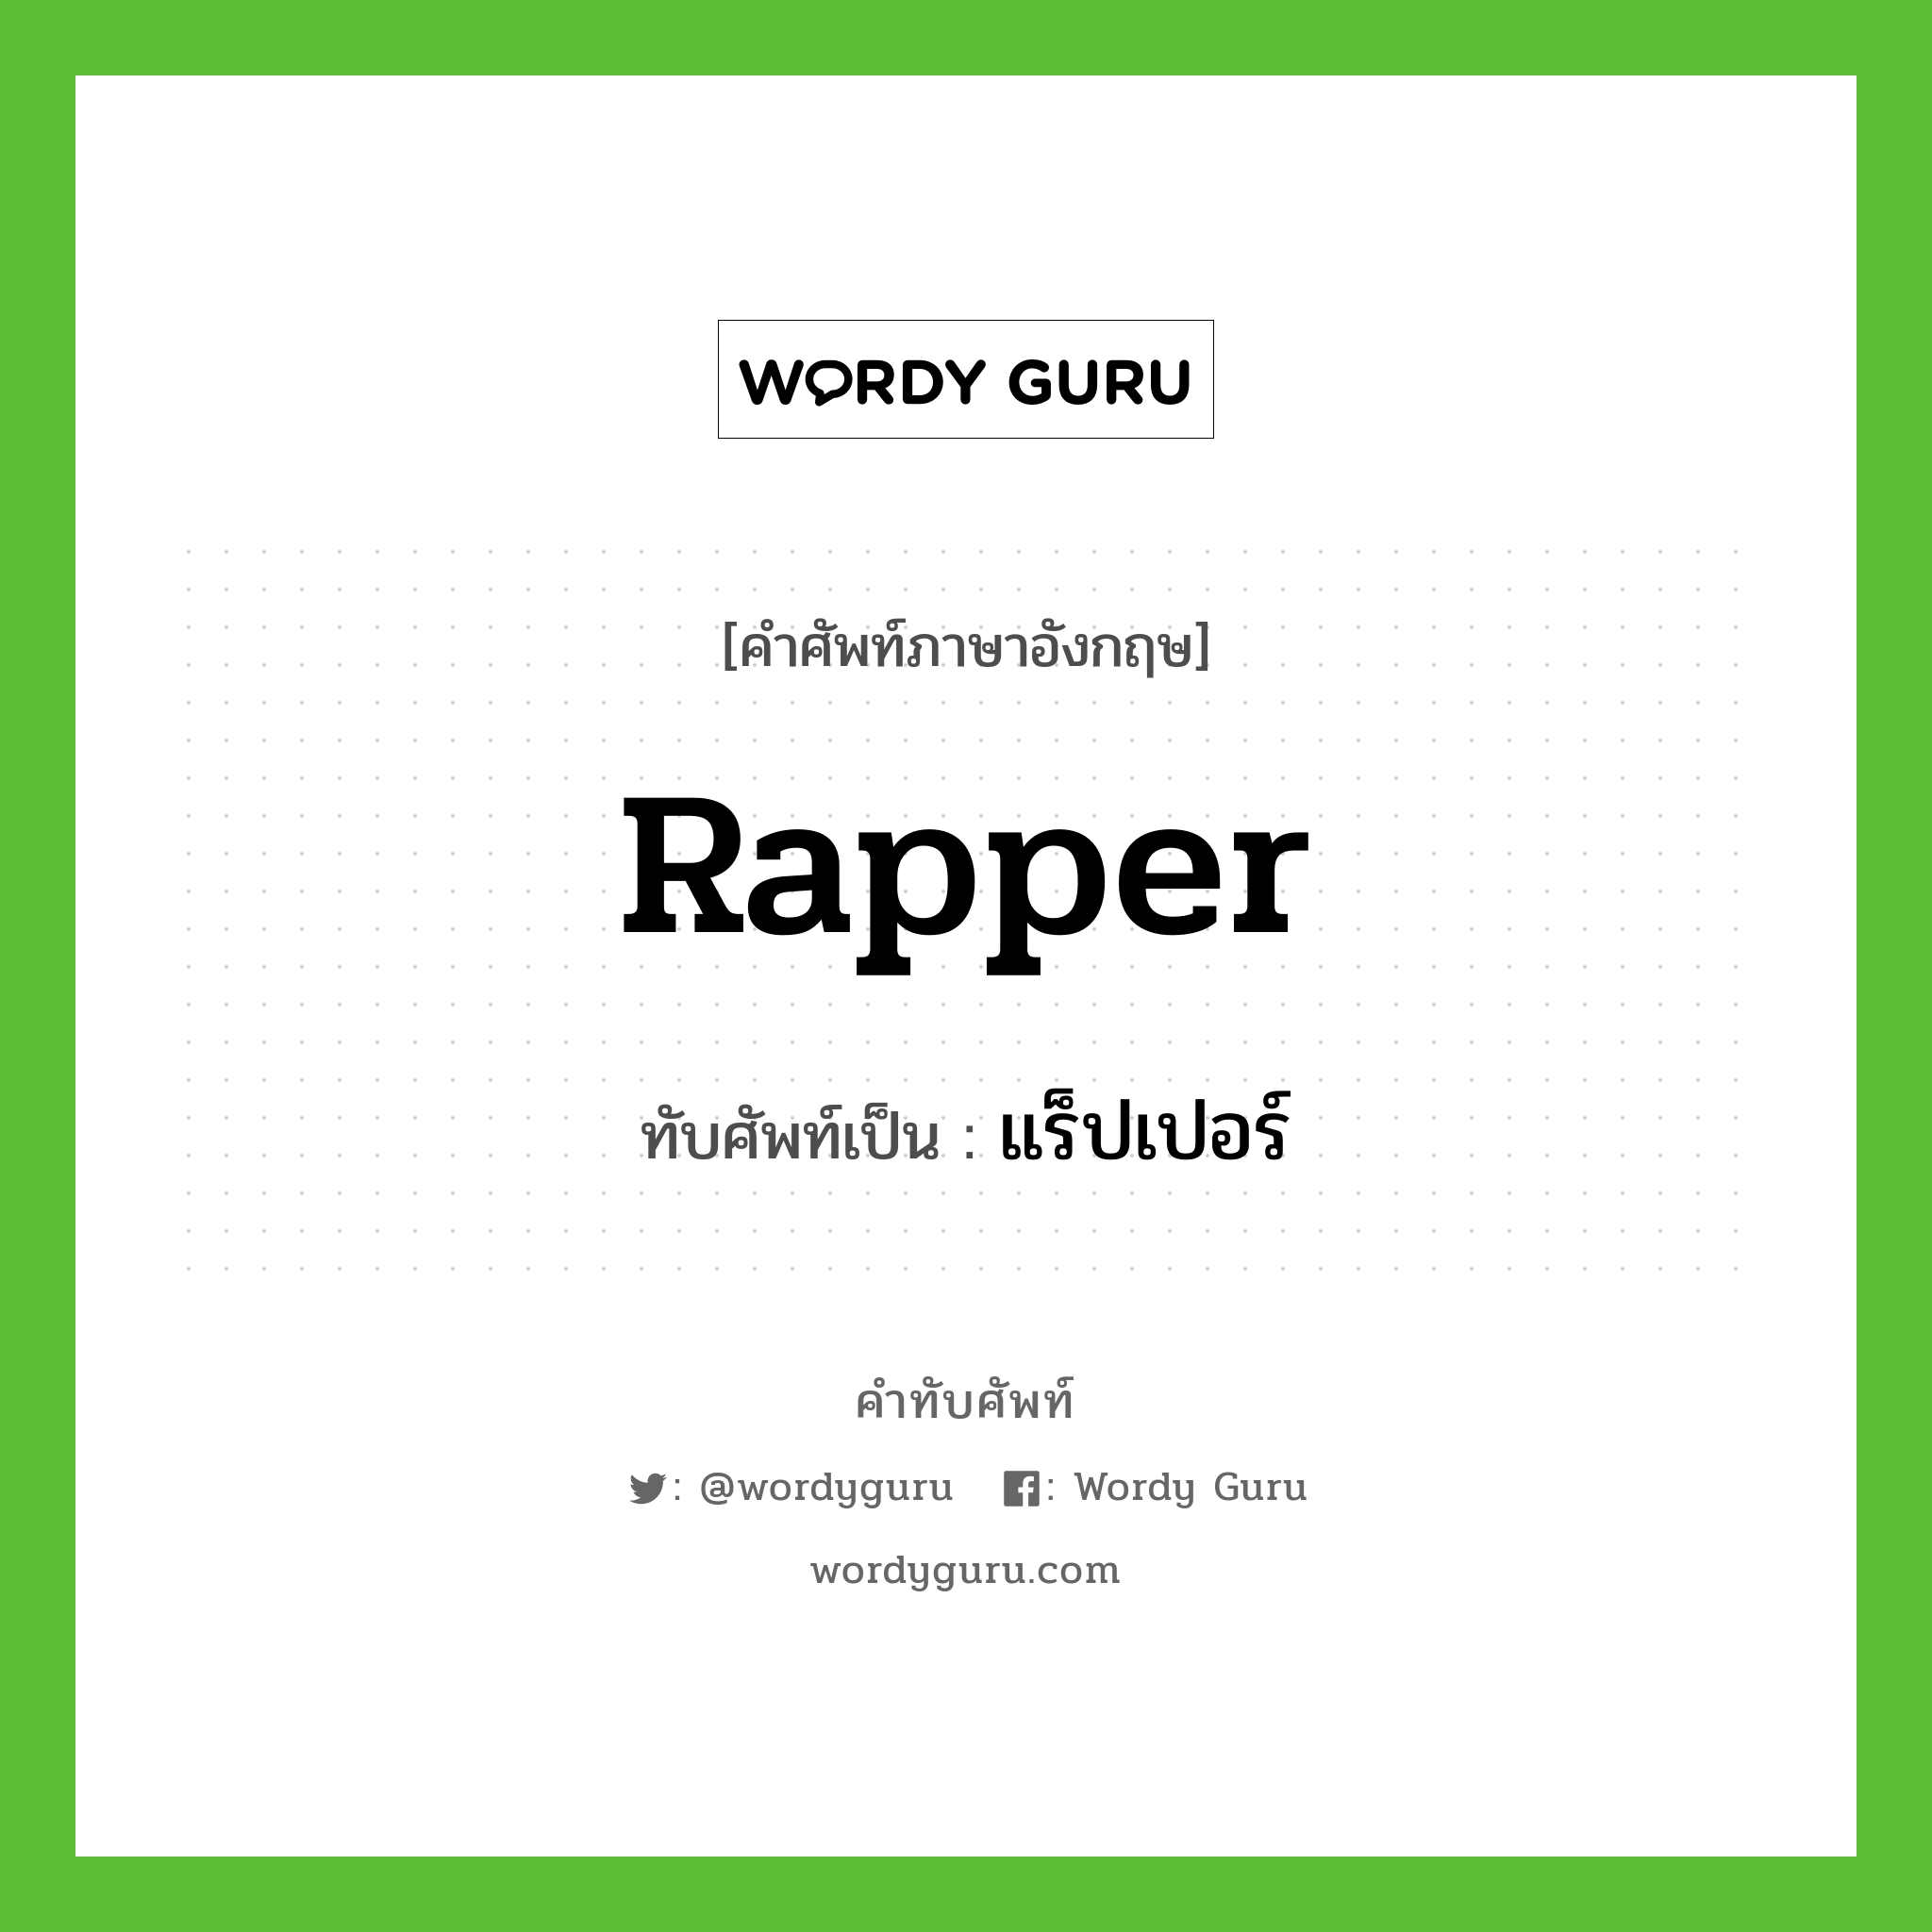 Rapper เขียนเป็นคำไทยว่าอะไร?, คำศัพท์ภาษาอังกฤษ Rapper ทับศัพท์เป็น แร็ปเปอร์